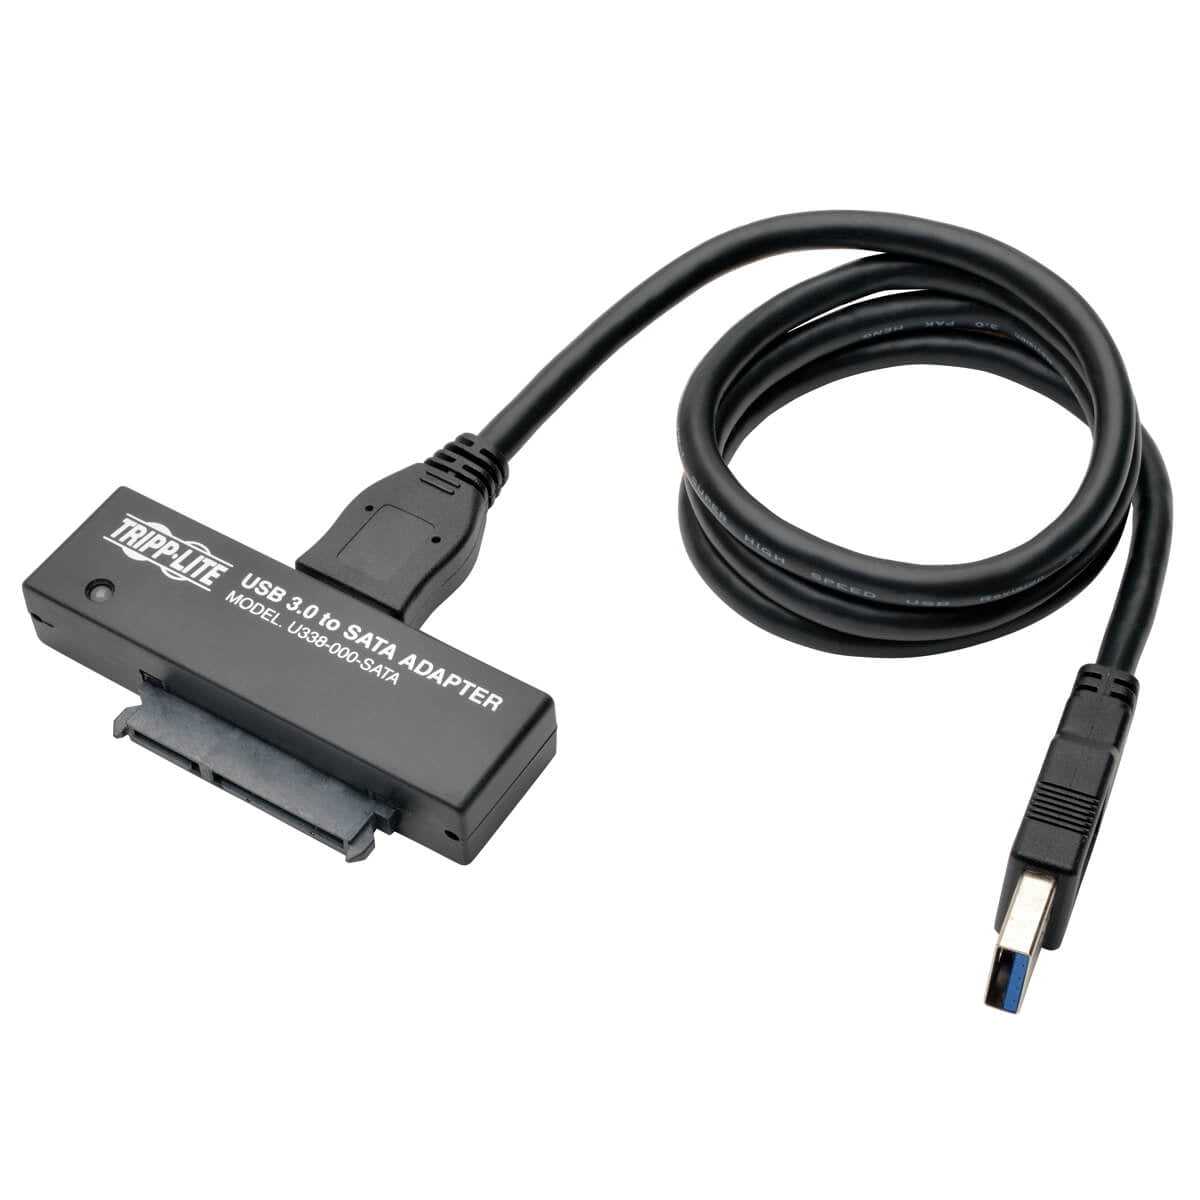 Tripp Lite Usb 3.0 To Sata Iii Adapter 2.5in / 3.5in Hard Drives Controllr - 2.5", 3.5" - Sata 6gb/s - Usb 3.0 - Black - Walmart.com